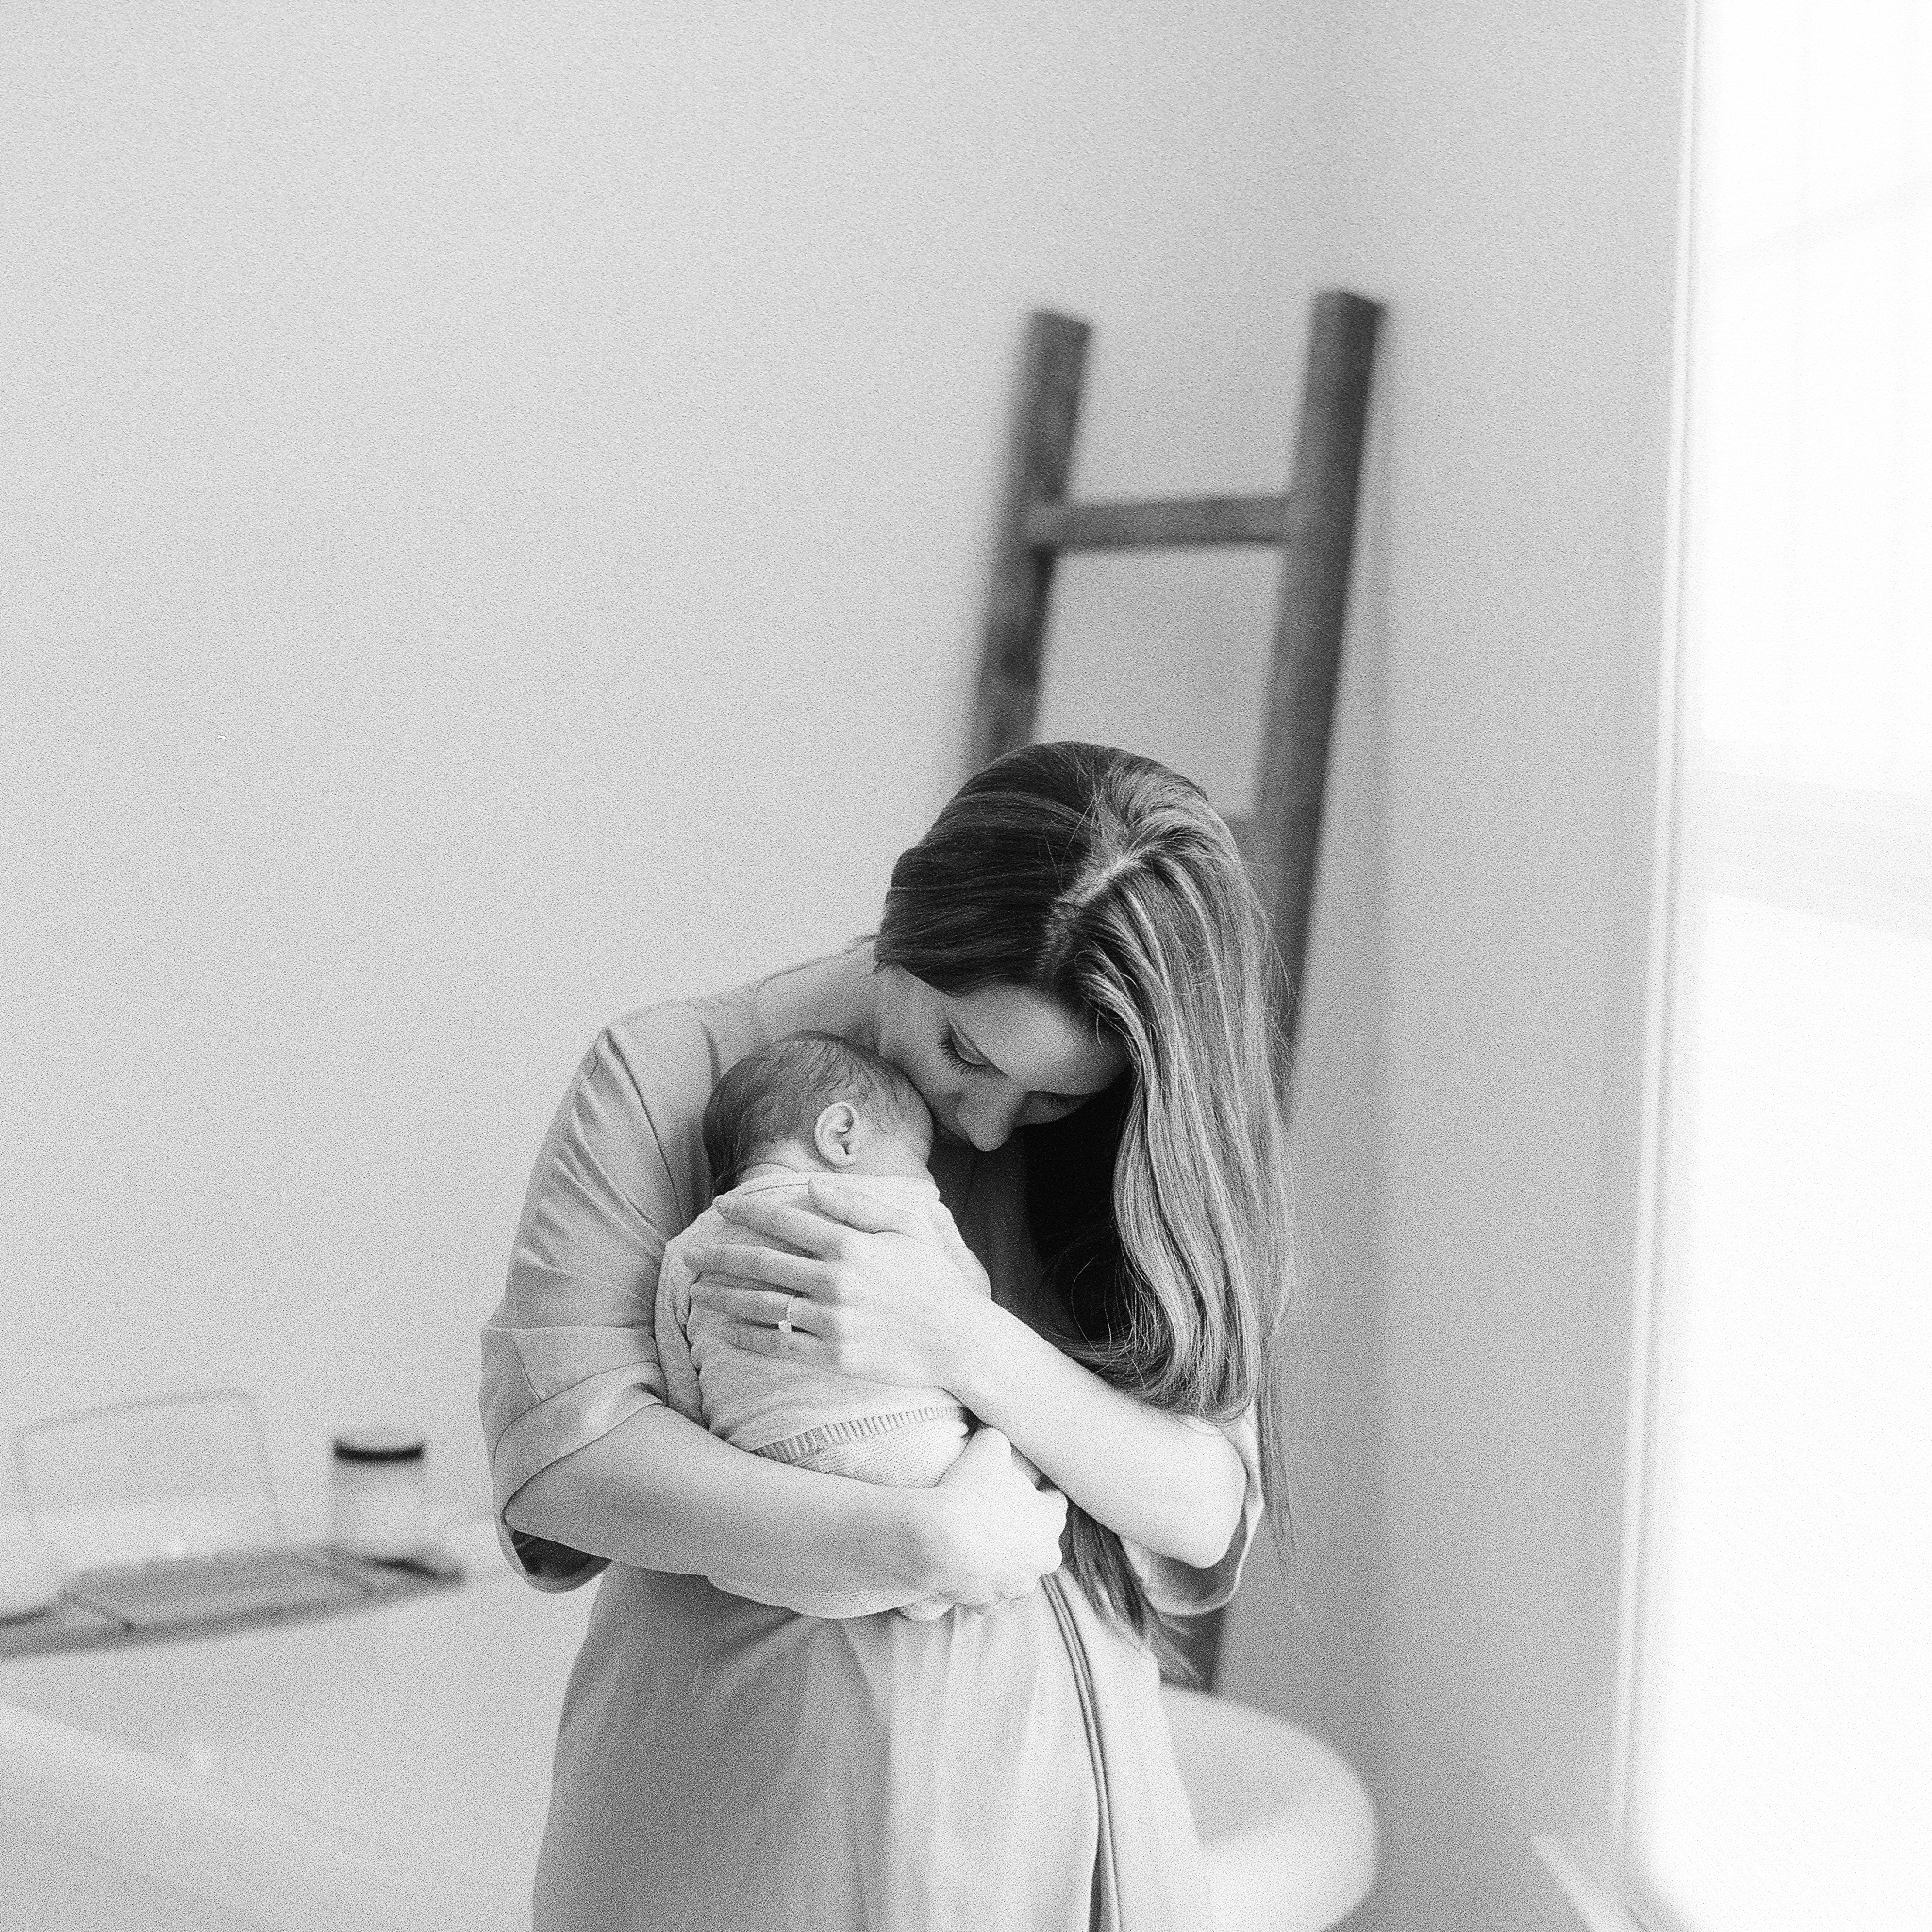 Portland Maine Maternity, Newborn, Baby Photographer Tiffany Farley, http://tiffanyfarley.com